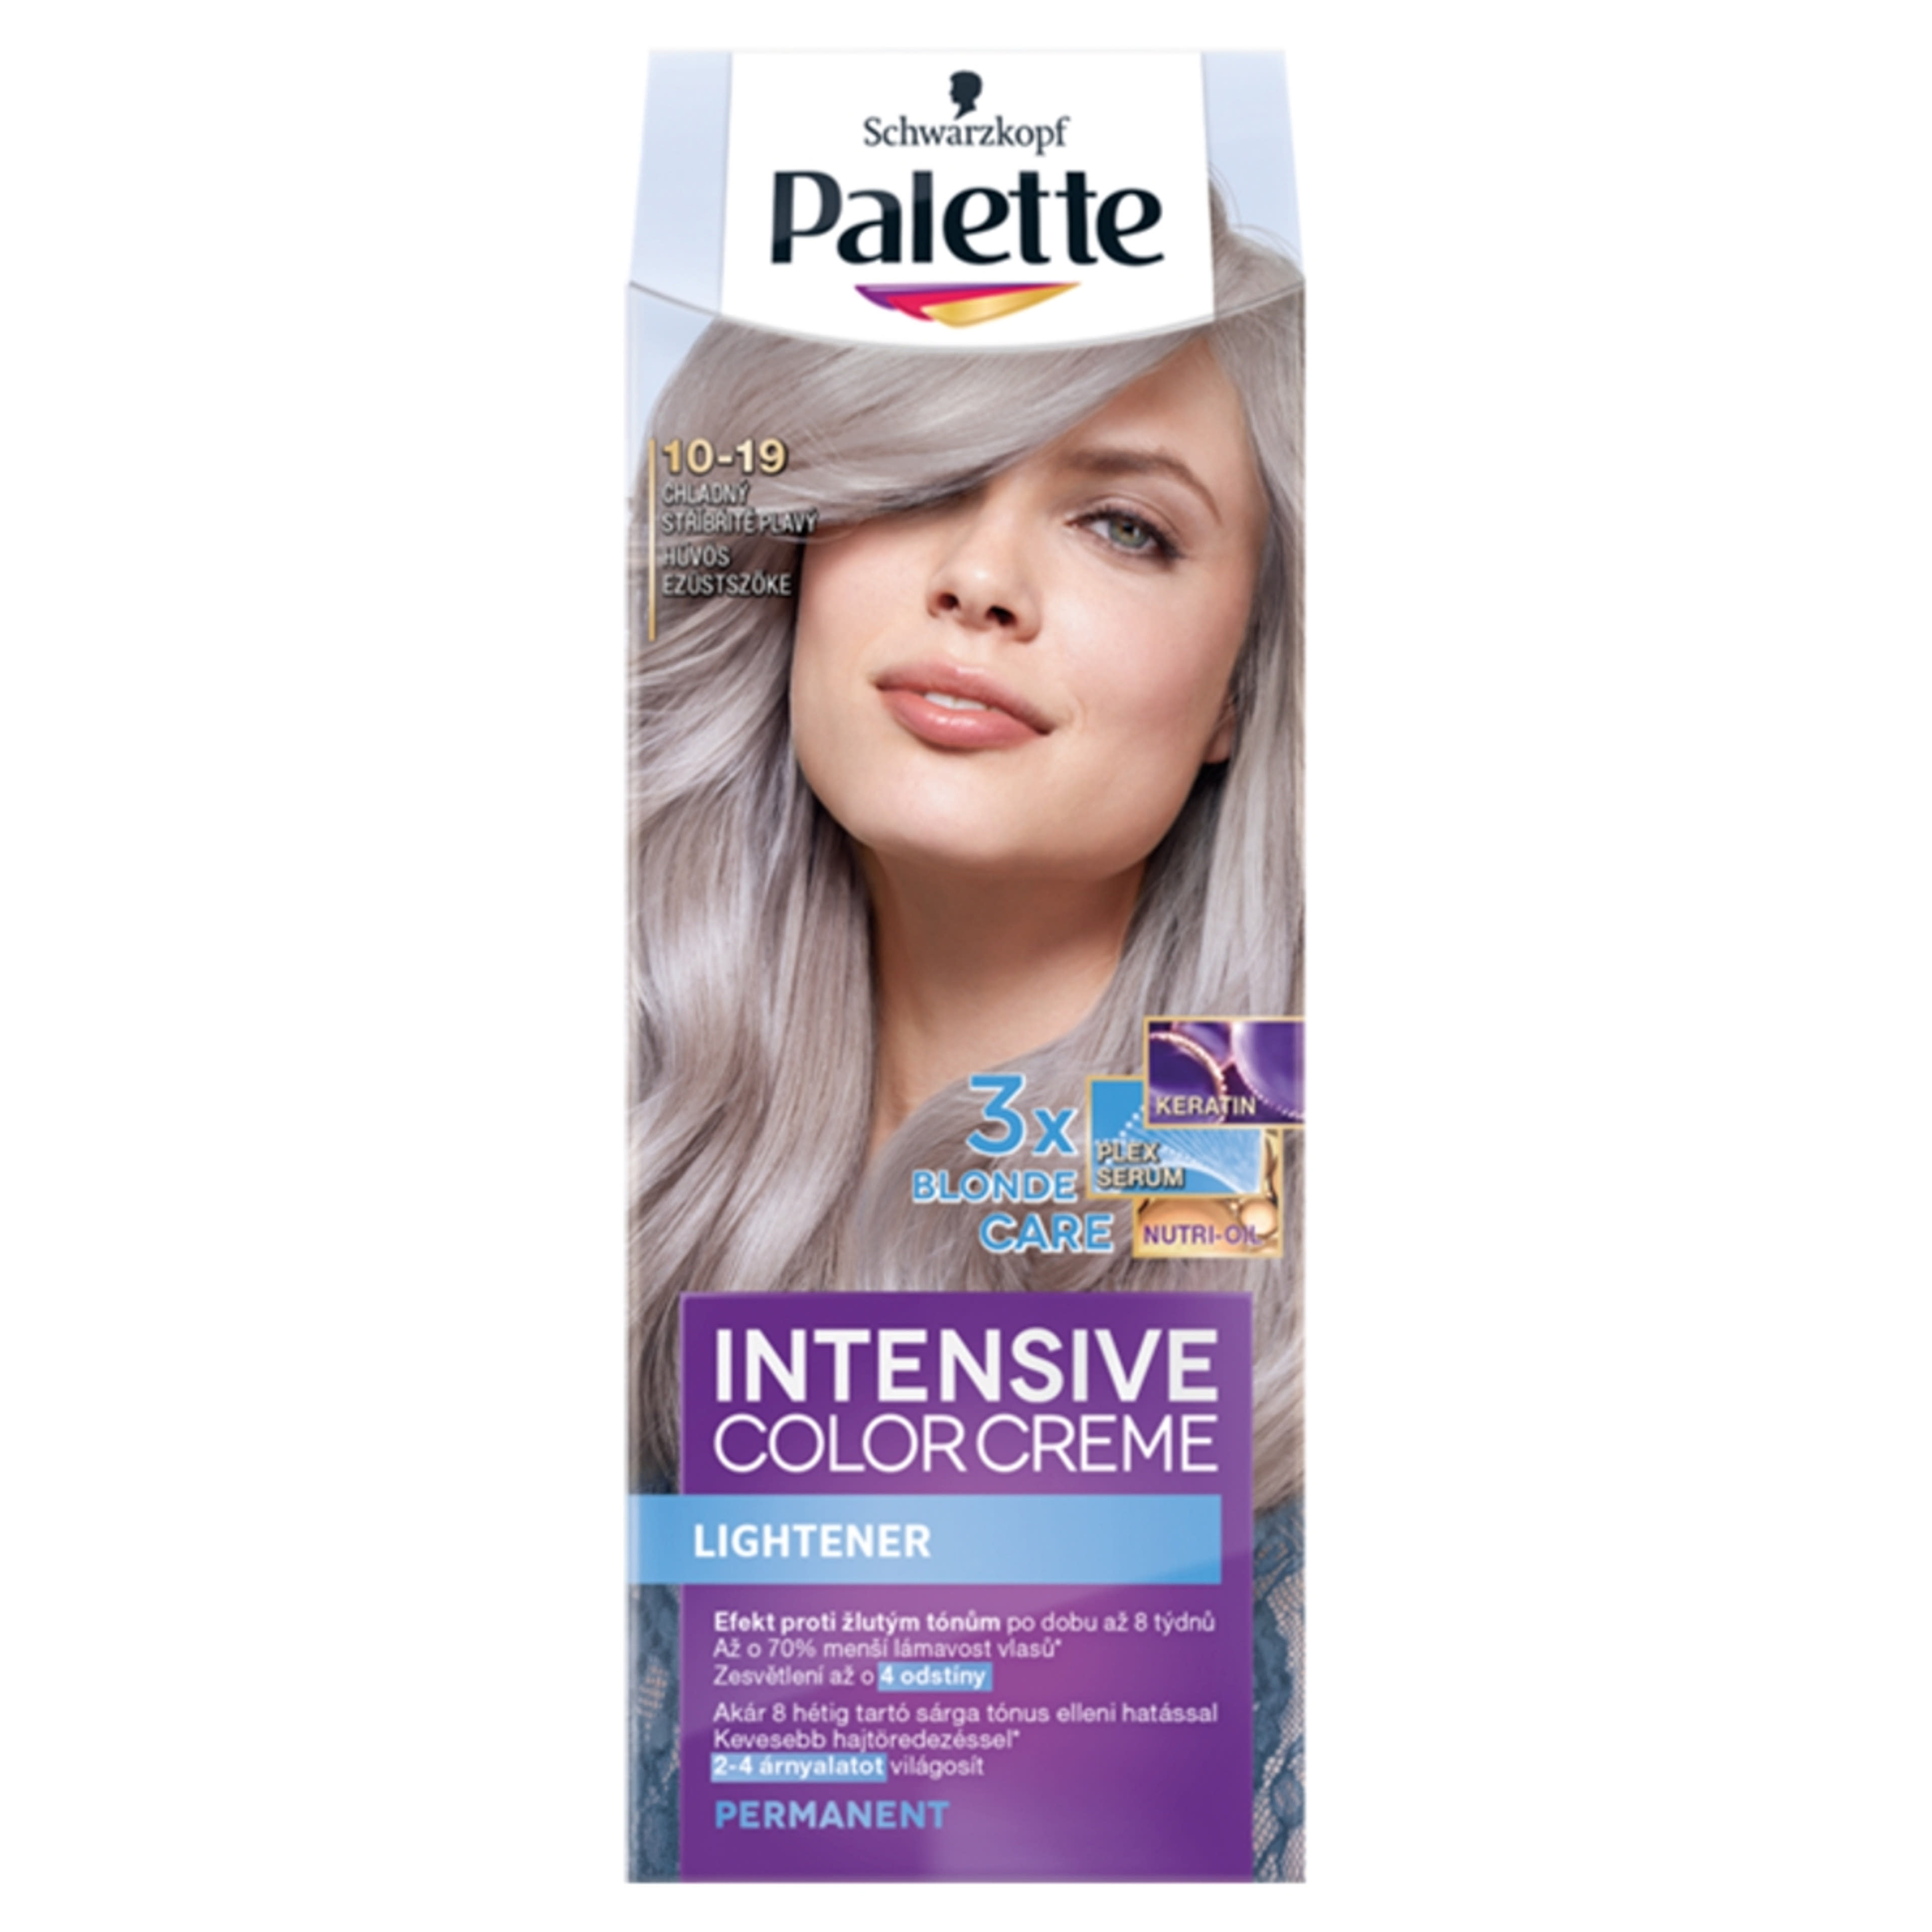 Palette Intensive Color Creme 10-19 hűvös ezüstszőke - 1 db